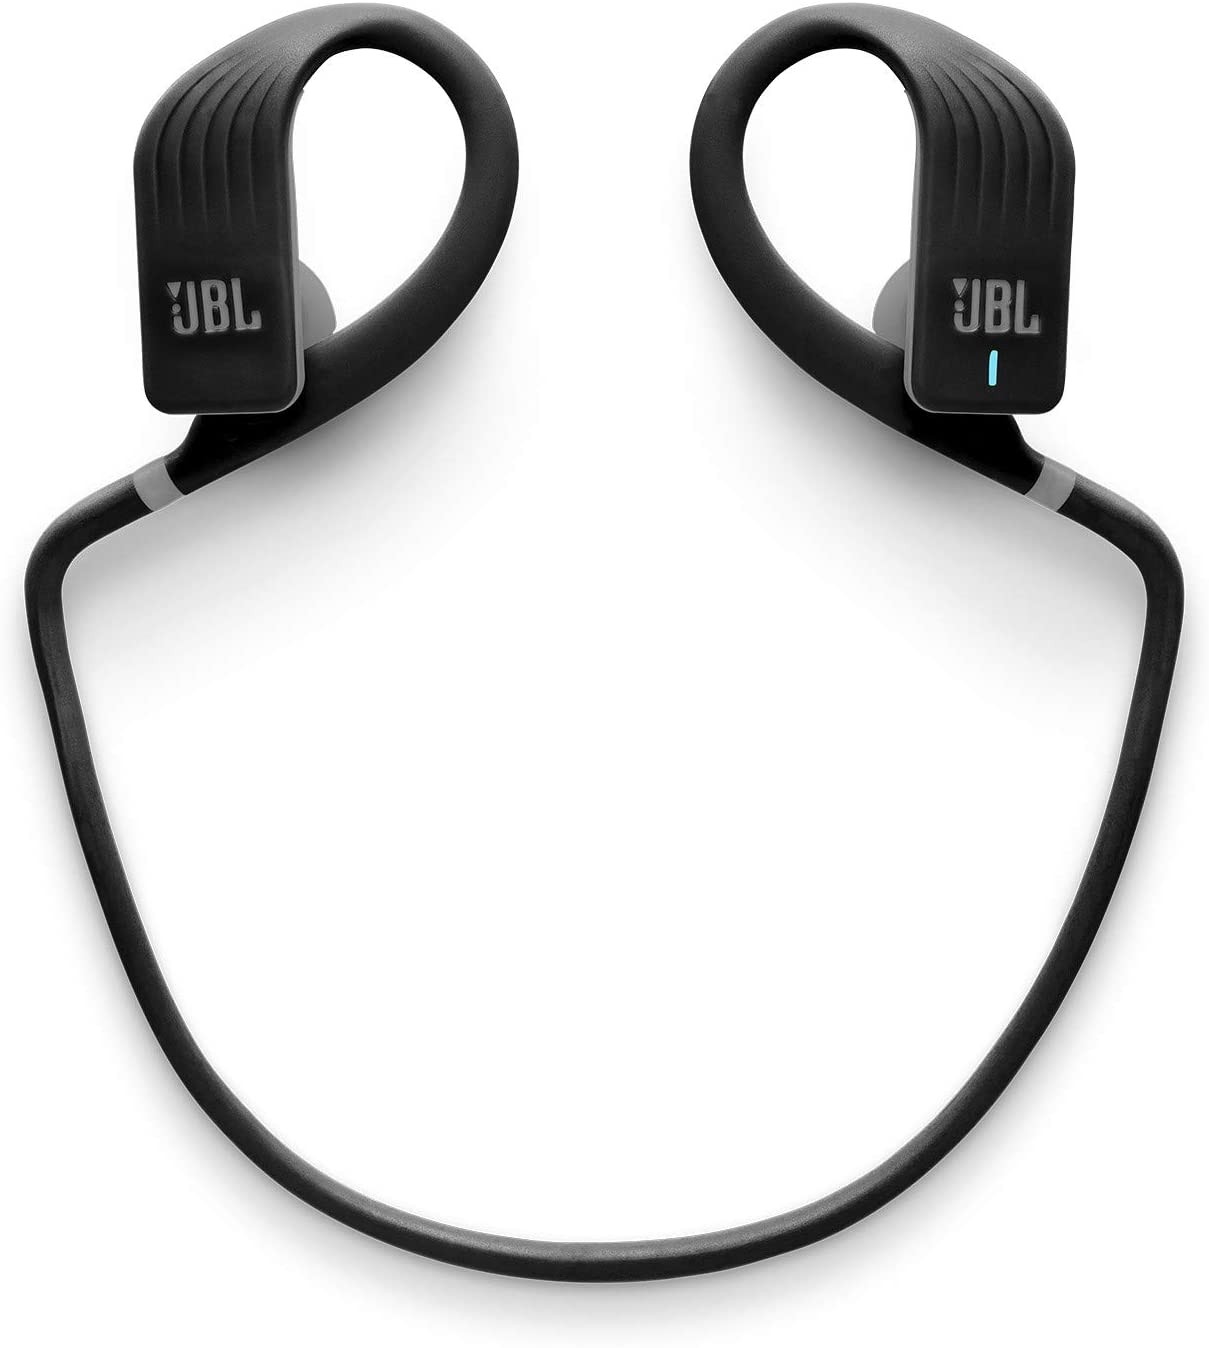 Fones de ouvido esportivos sem fio impermeáveis JBL Endurance Jump com controle remoto de um toque, Preto, One Size